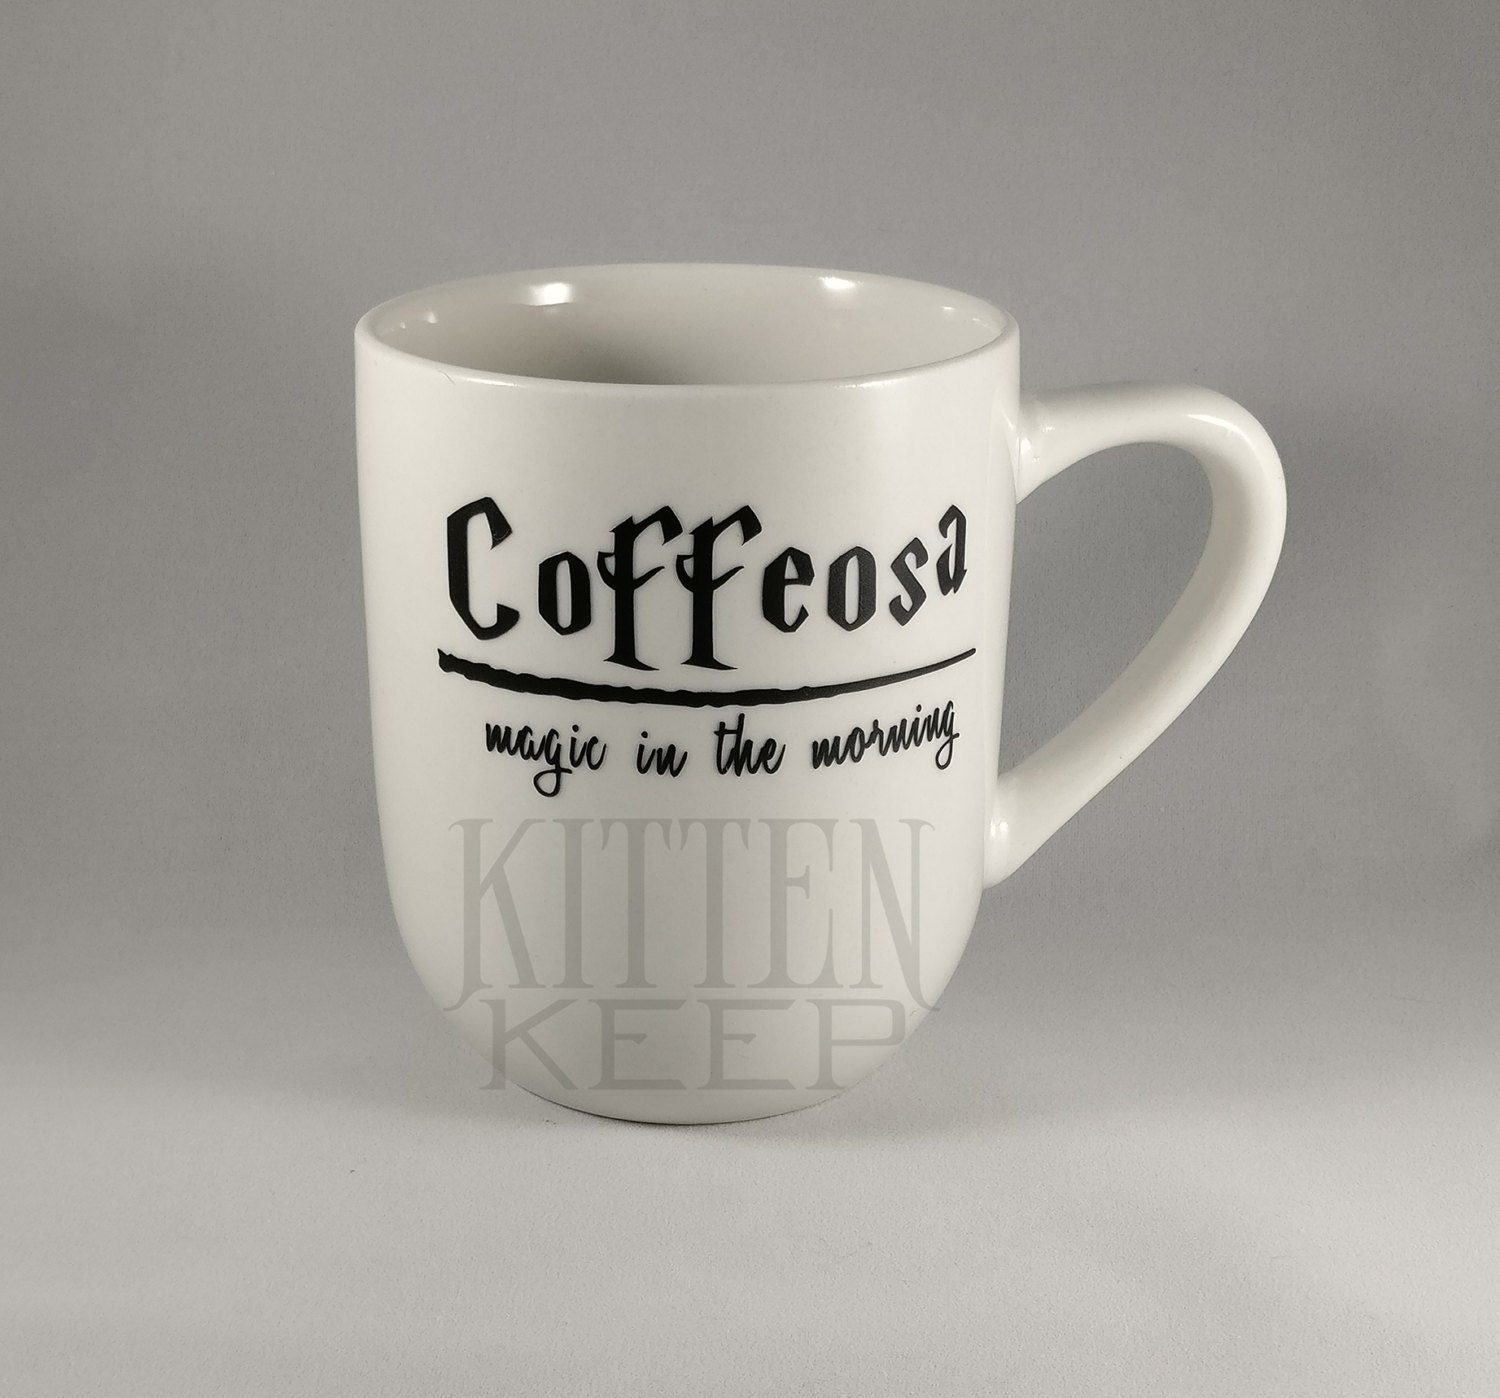 Coffeosa Magic in the Morning Coffee Mug